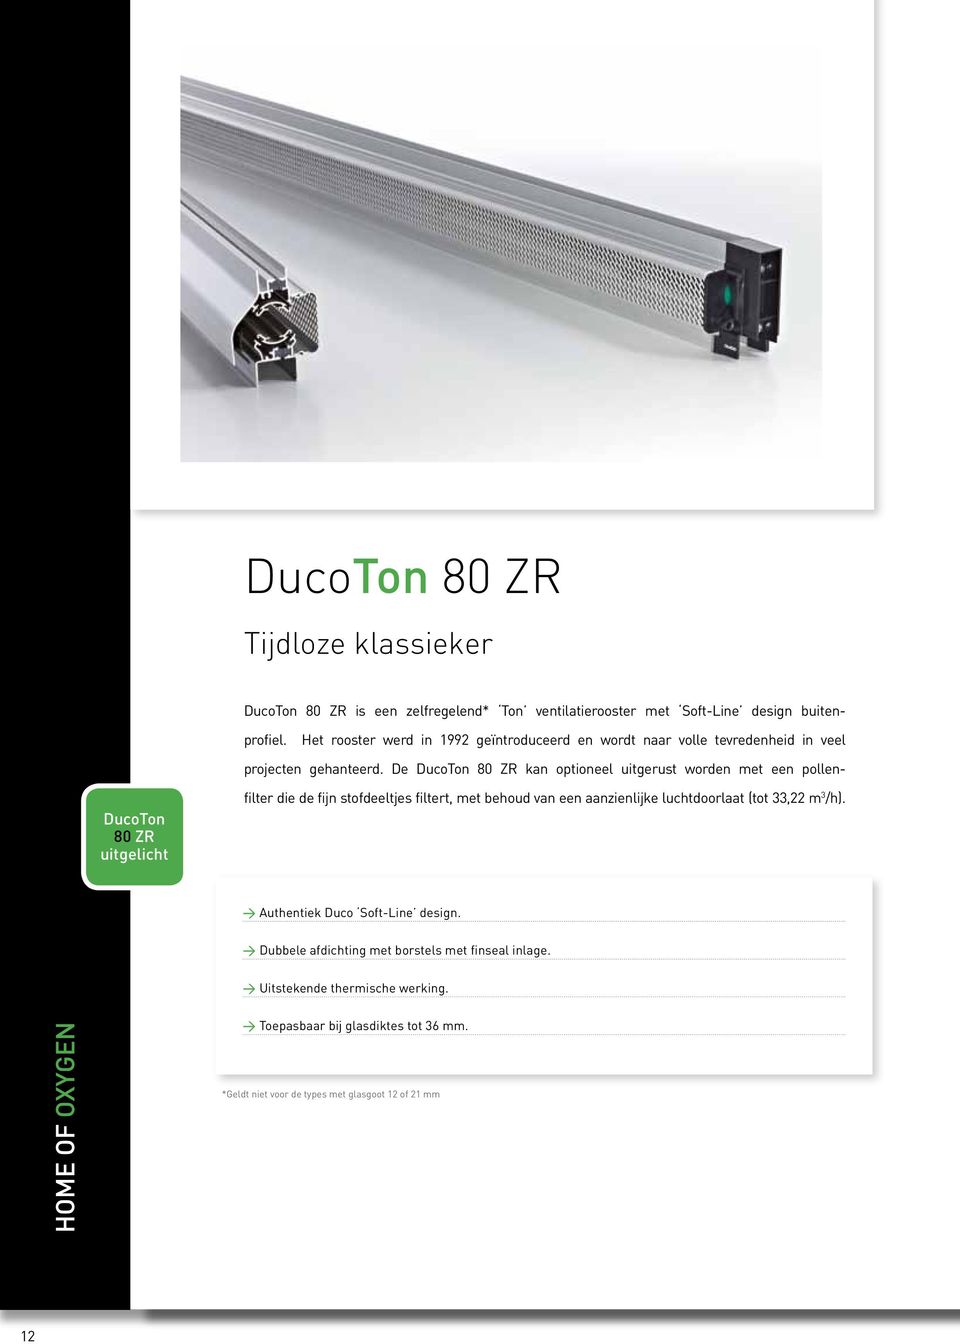 De DucoTon 80 ZR kan optioneel uitgerust worden met een pollen- DucoTon 80 ZR uitgelicht filter die de fijn stofdeeltjes filtert, met behoud van een